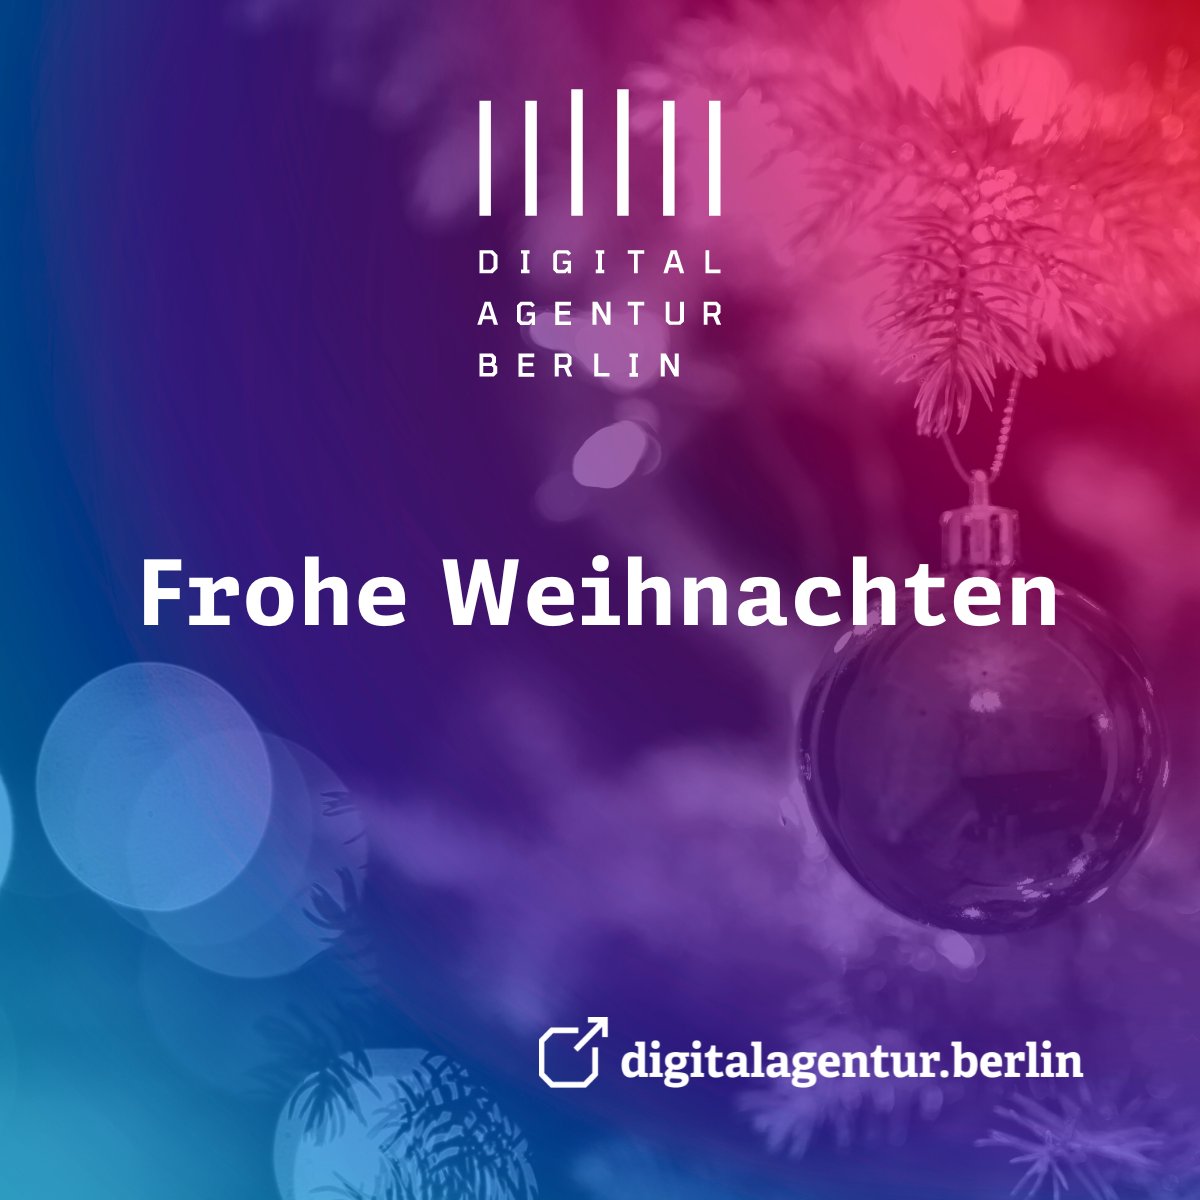 🎄✨ Frohe Weihnachten! 🎁🌟 Die Digitalagentur Berlin sendet herzliche Grüße für eine besinnliche Festtagszeit. Genießen Sie die Feiertage mit Ihren Liebsten und tanken Sie Energie für das kommende Jahr. #Weihnachten #Berlin #DigitalagenturBerlin